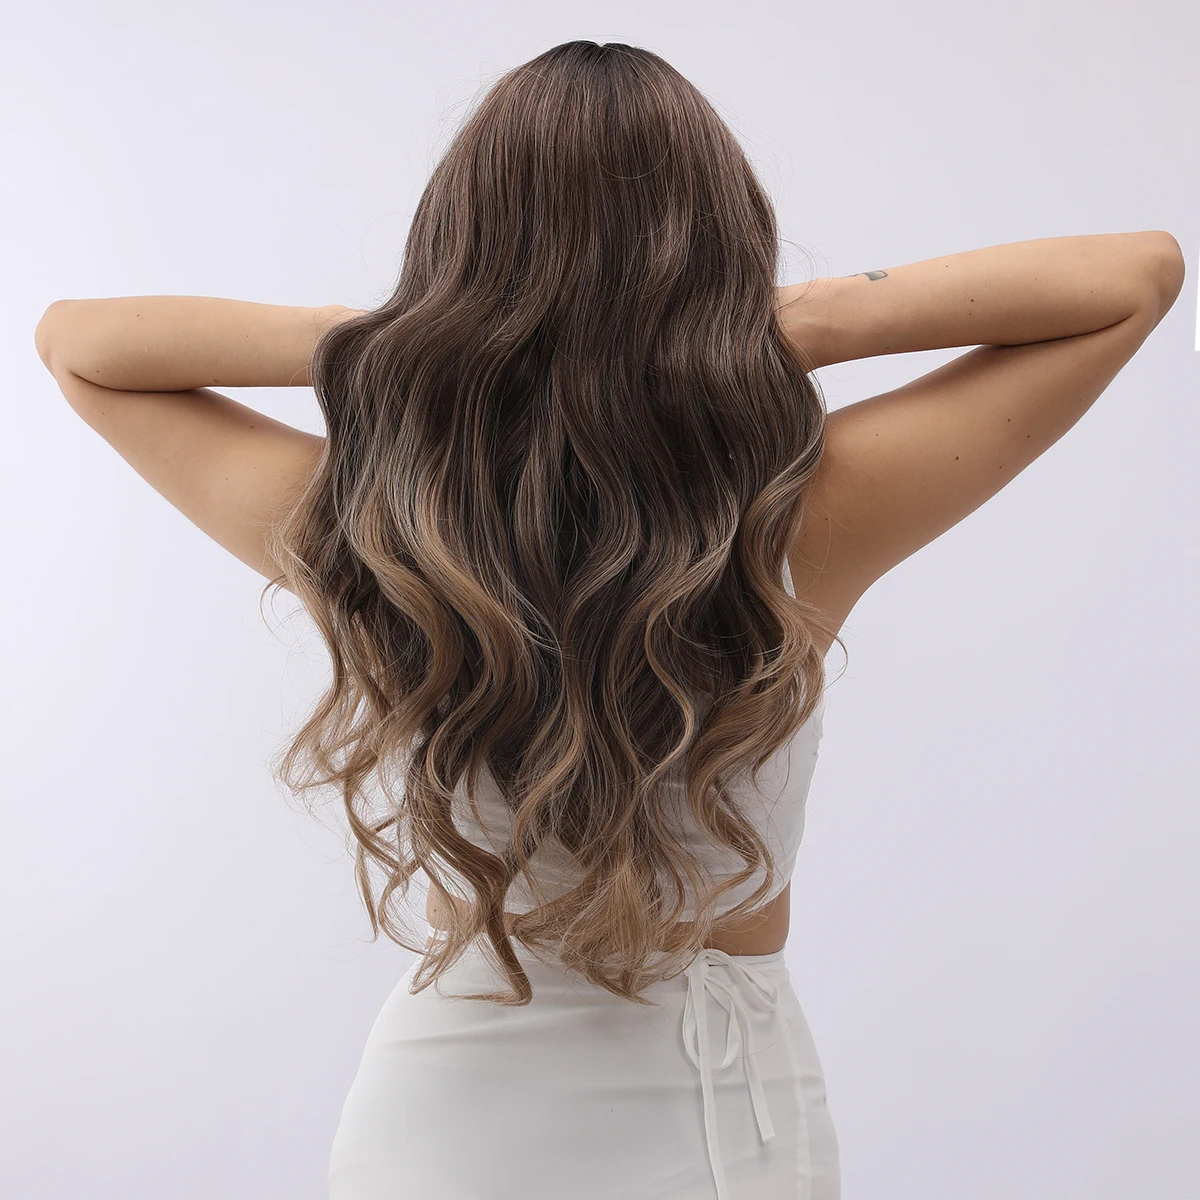 Smilco-Perruque Lace Front Wig synthétique bouclée, cheveux longs, brun ombré, 13x5, 28 pouces, pour femmes